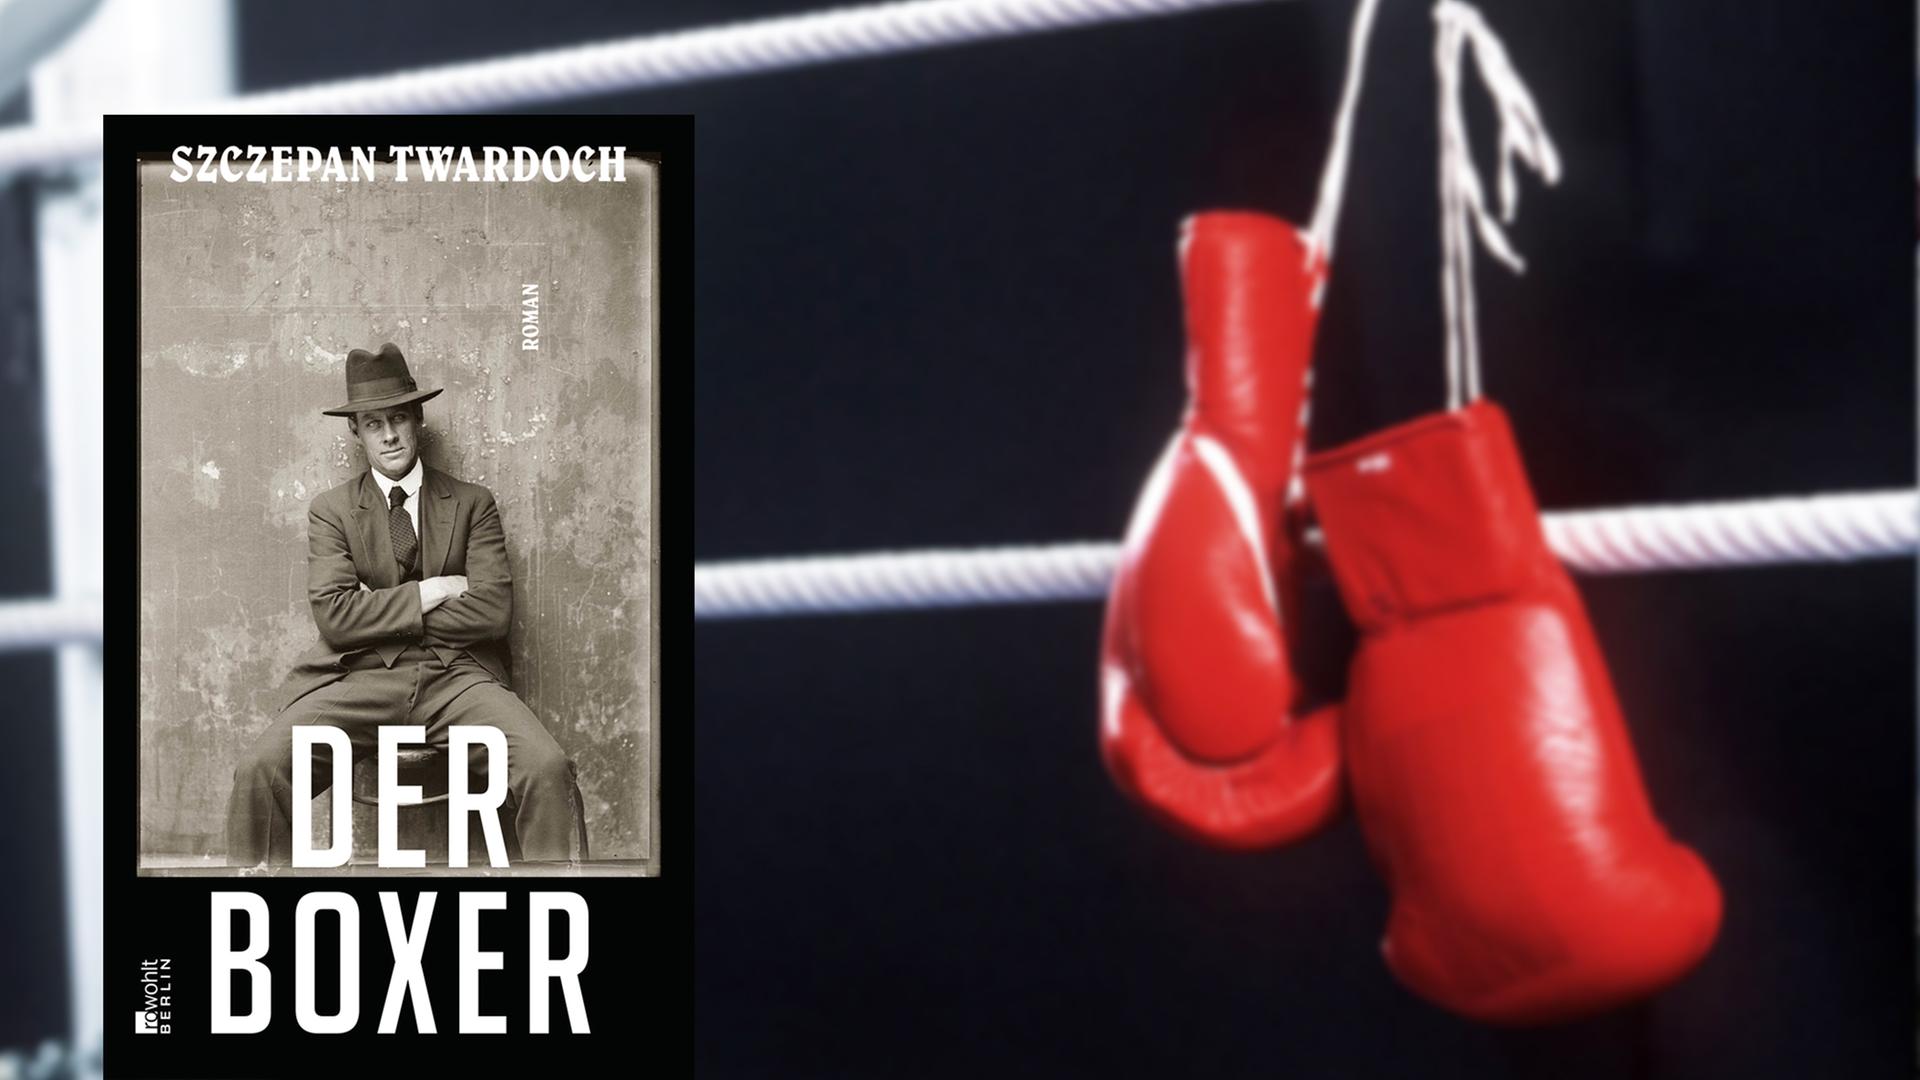 Buchcover "Der Boxer" von Szczepan Twardoch, im Hintergrund Boxhandschuhe am Seil eines Boxrings